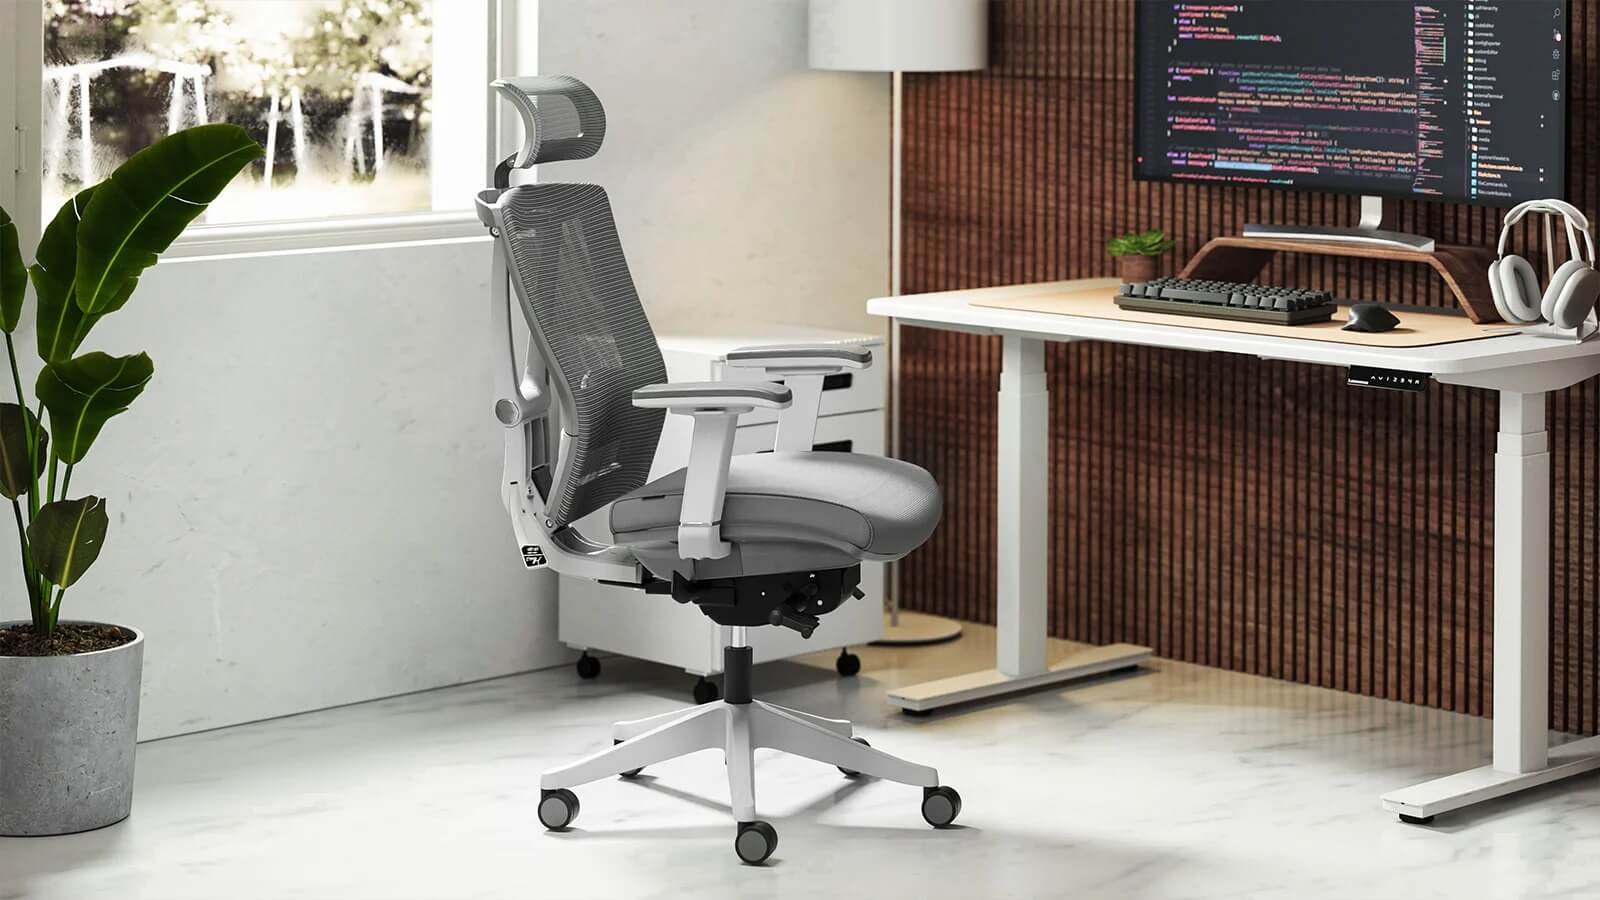 Thiết kế của ghế công thái học tập trung chủ yếu vào các bộ phận thường bị căng thẳng khi làm việc